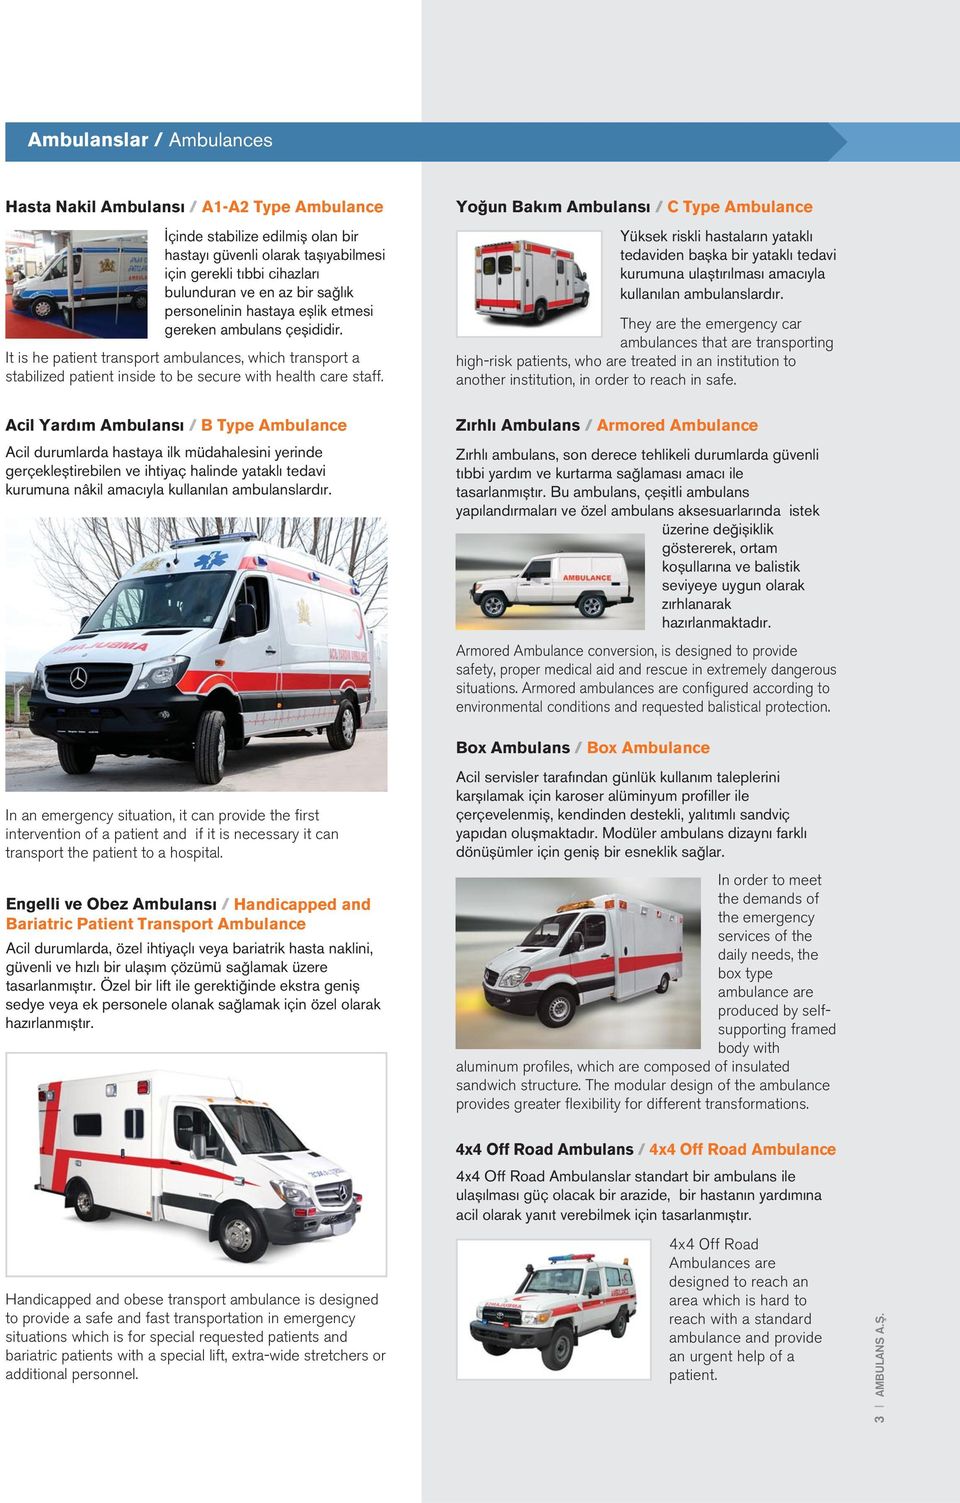 Yoğun Bakım Ambulansı C Type Ambulance Yüksek riskli hastaların yataklı tedaviden başka bir yataklı tedavi kurumuna ulaştırılması amacıyla kullanılan ambulanslardır.